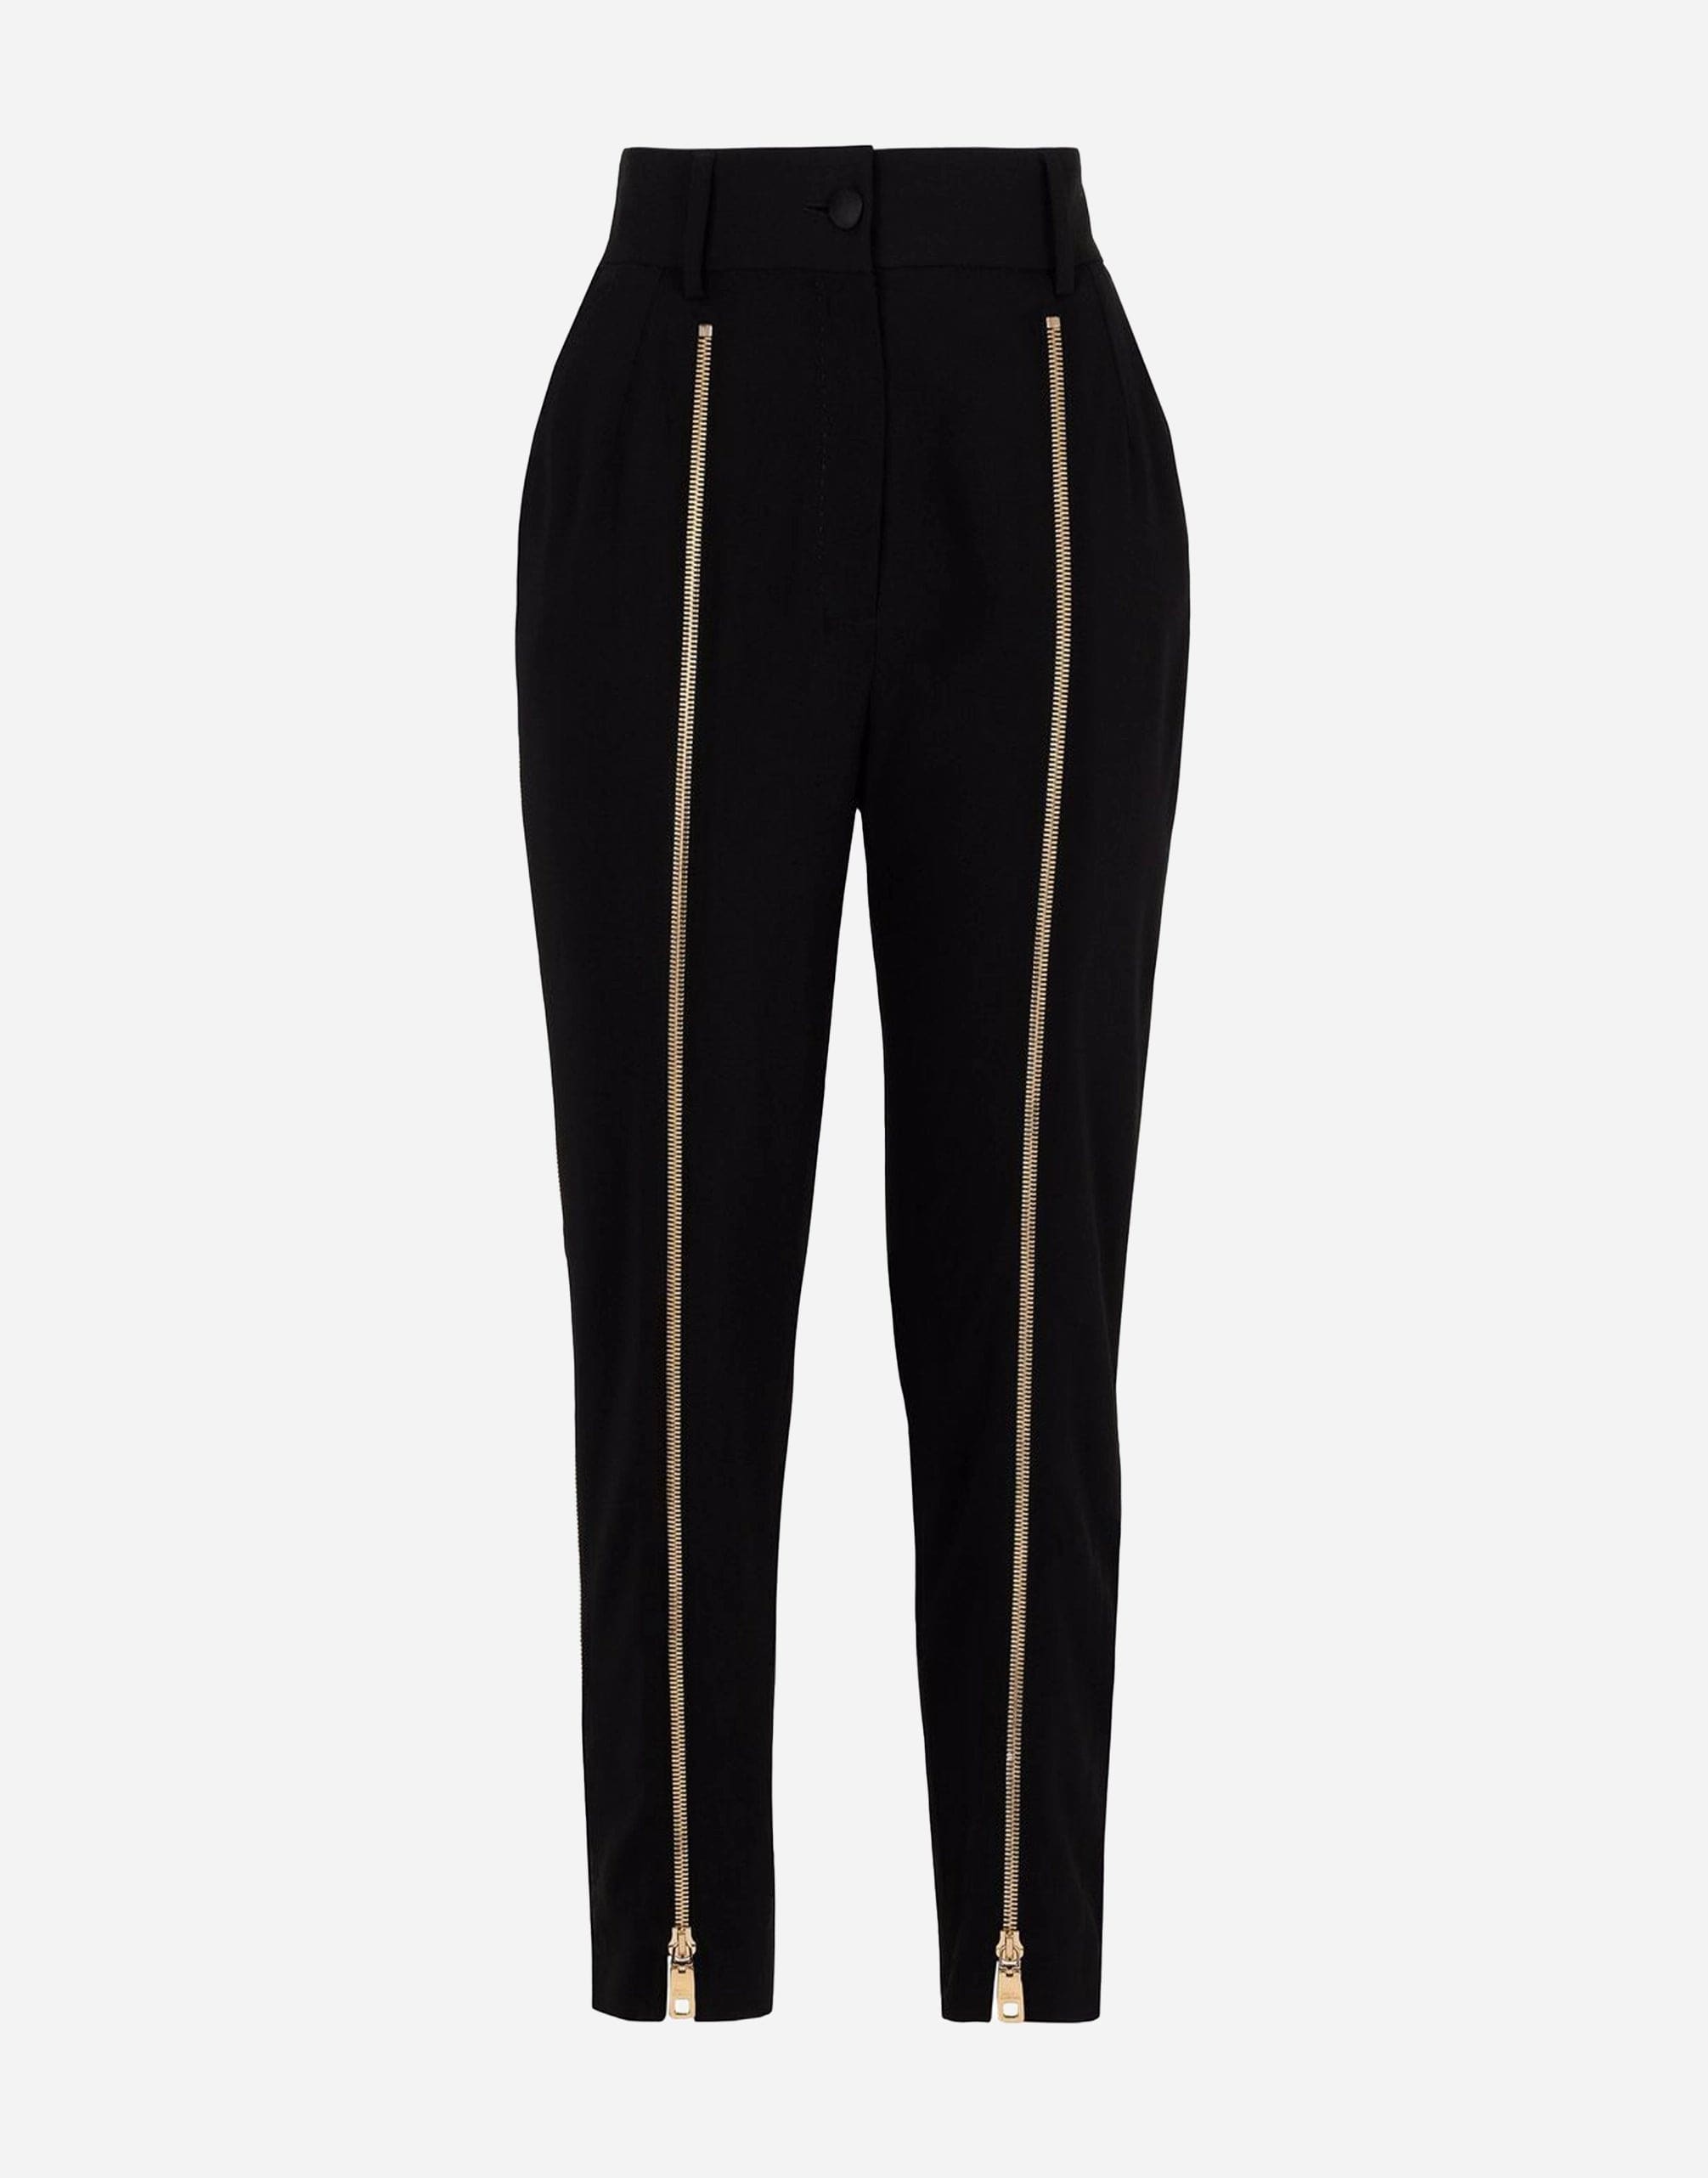 Dolce & Gabbana Zip-Fastening Cropped Pants